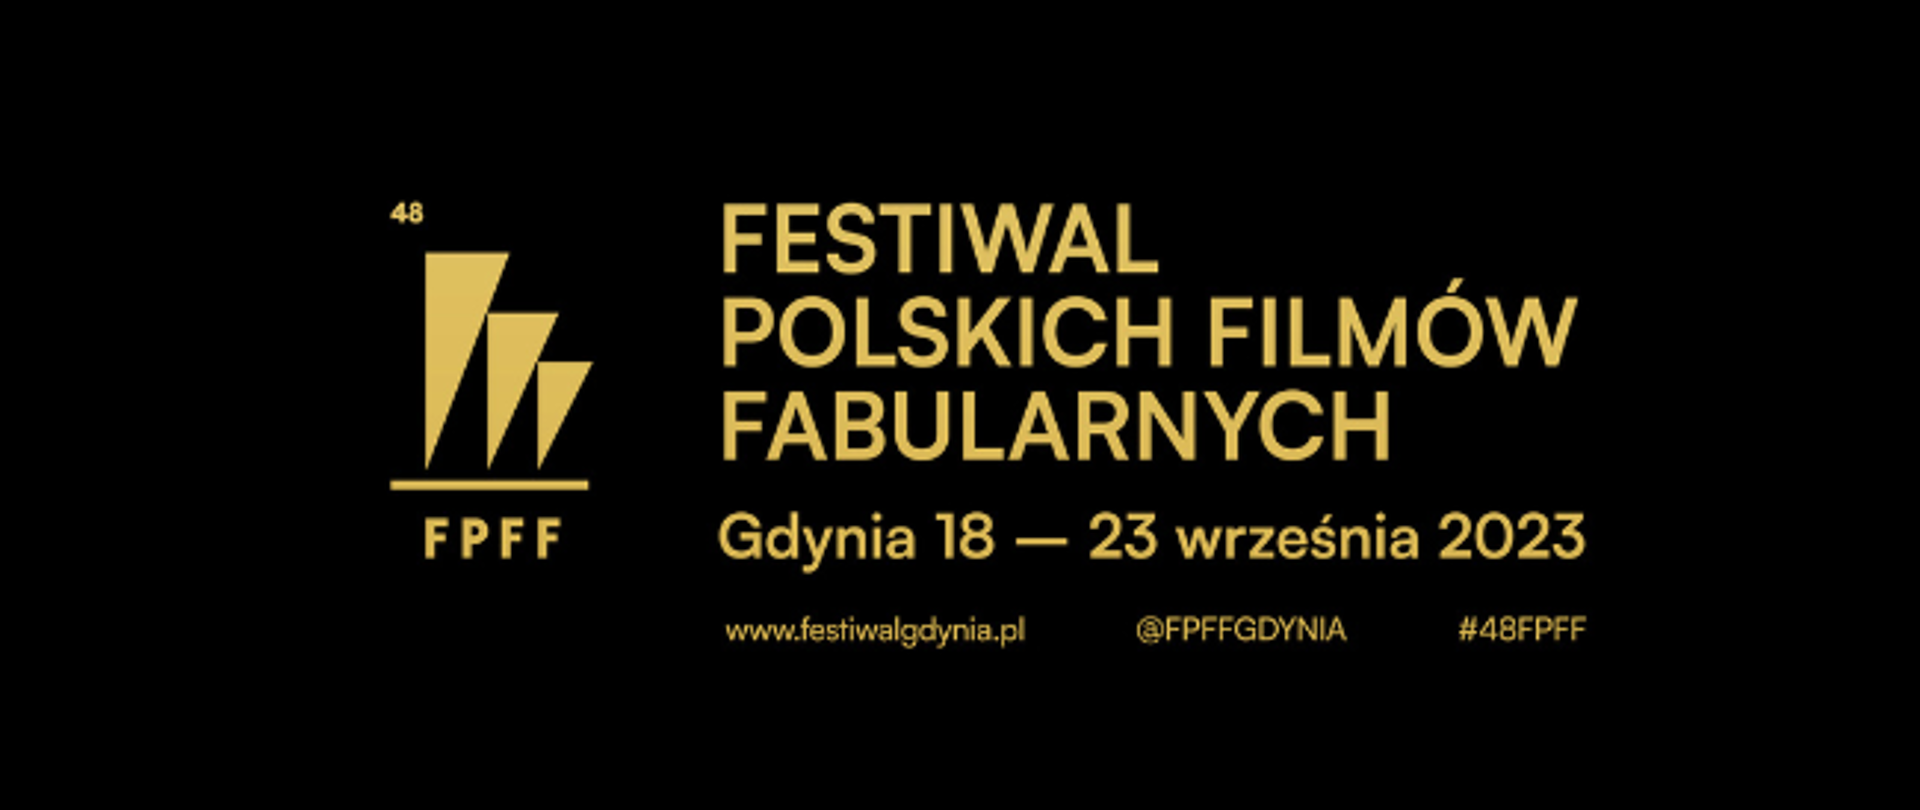 Filmy konkursowe 48. Festiwalu Polskich Filmów Fabularnych w Gdyni, fot. FPFF